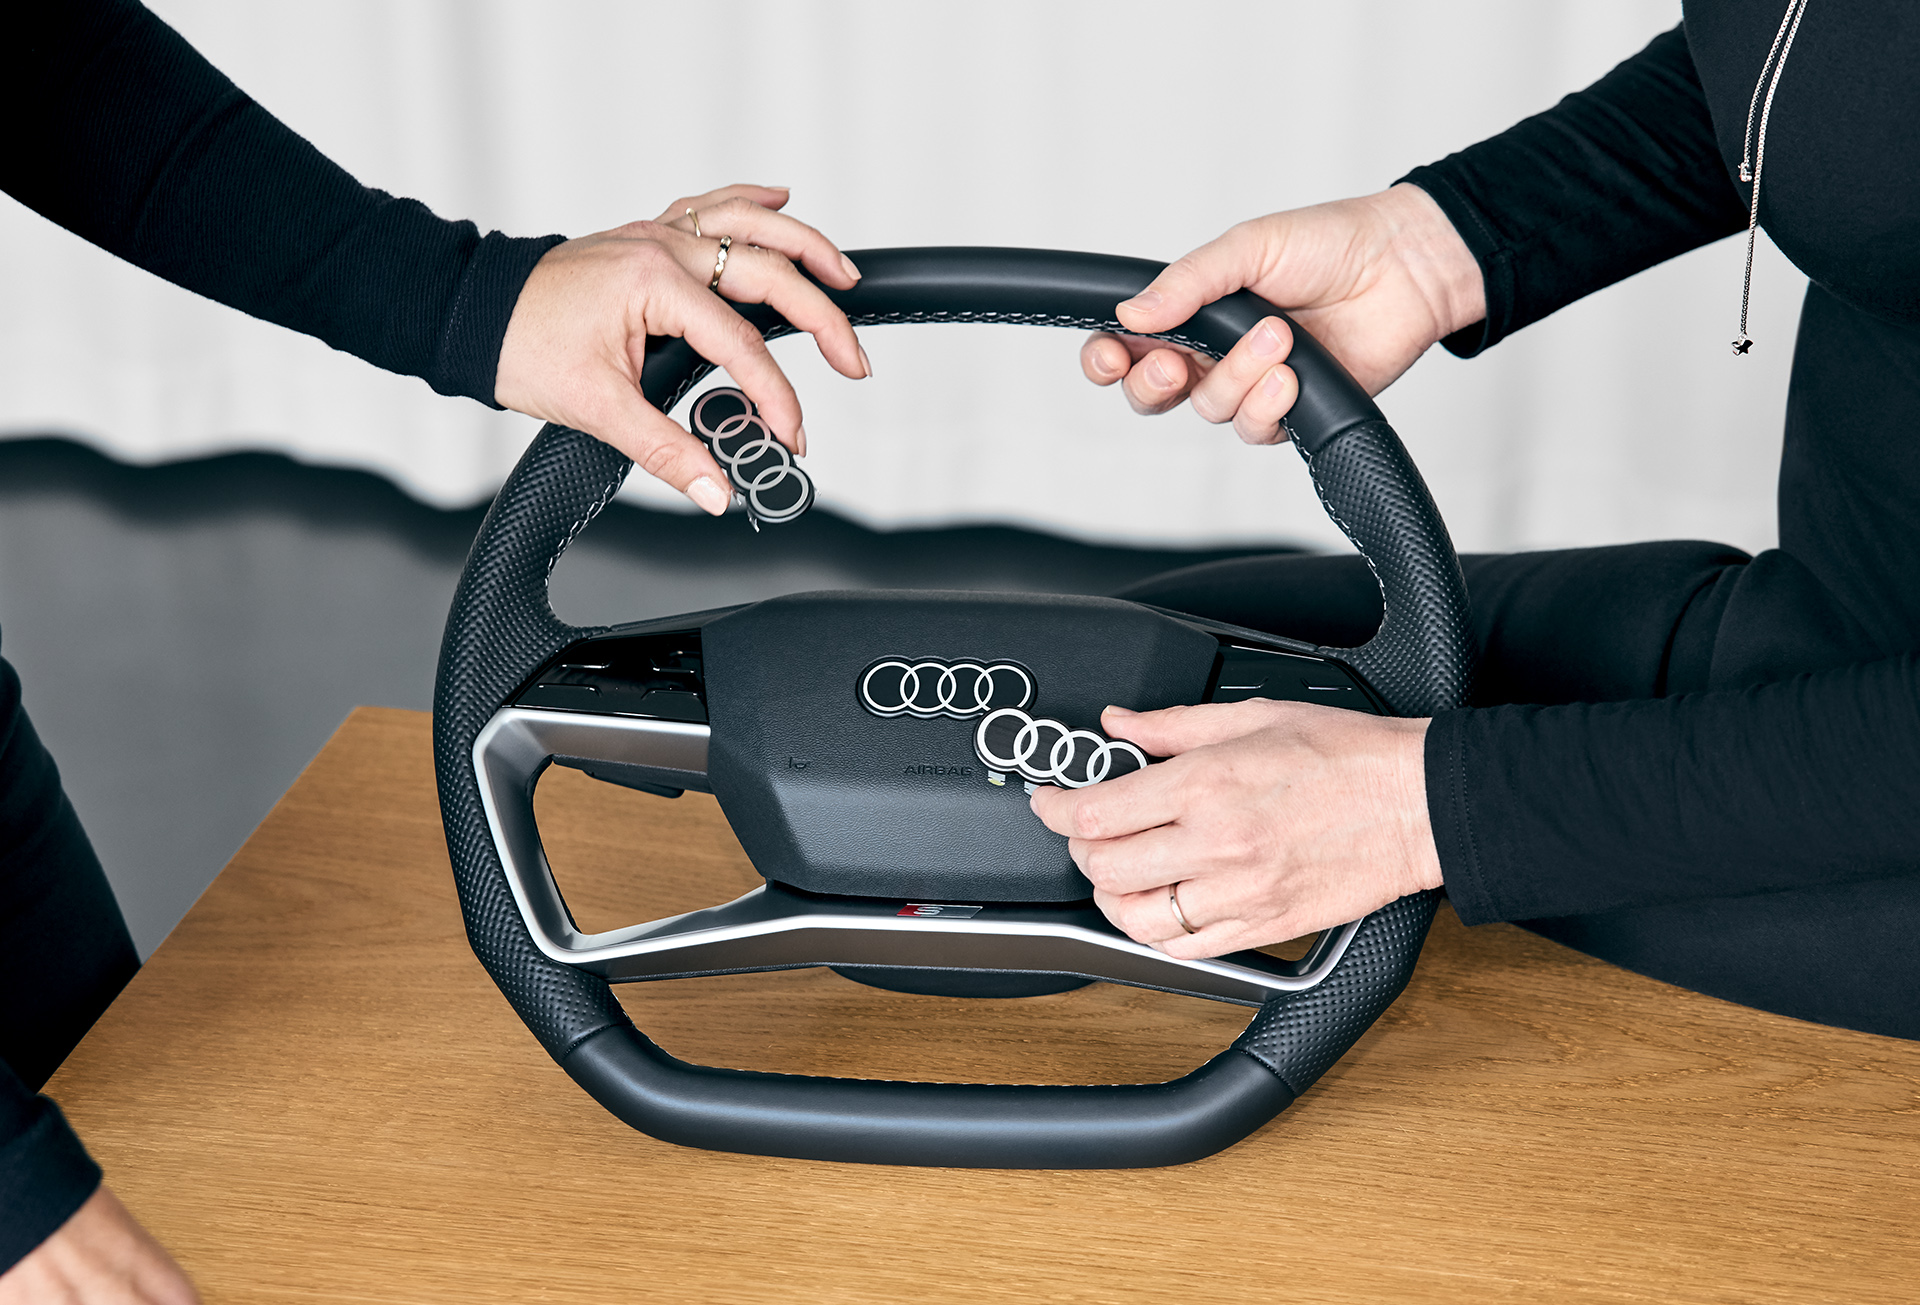 Les nouveaux anneaux Audi à l'exemple du volant de l'Audi Q4 e-tron